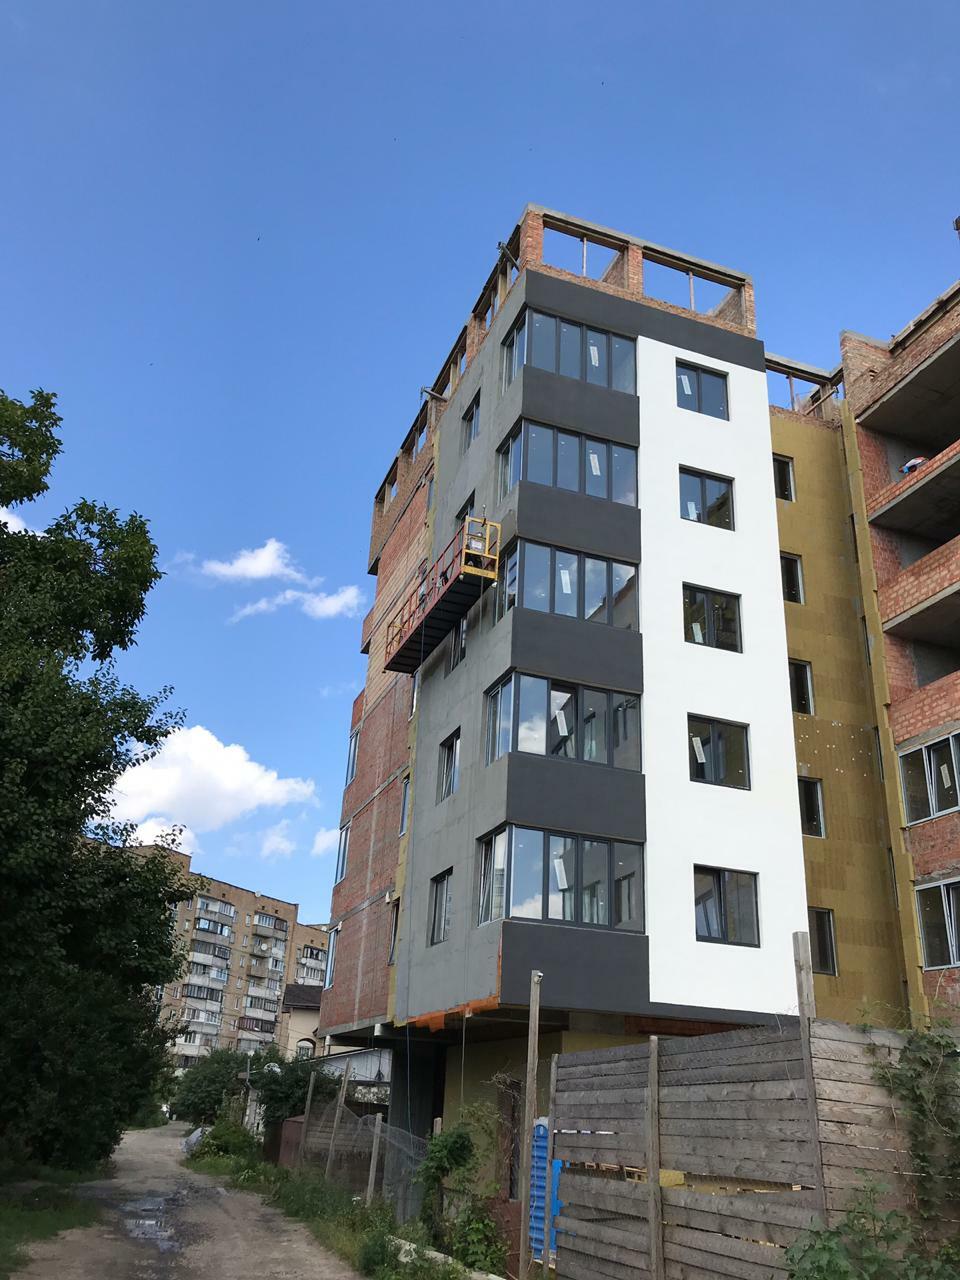 Ход строительства ЖК Дом на Волошина, июль, 2019 год